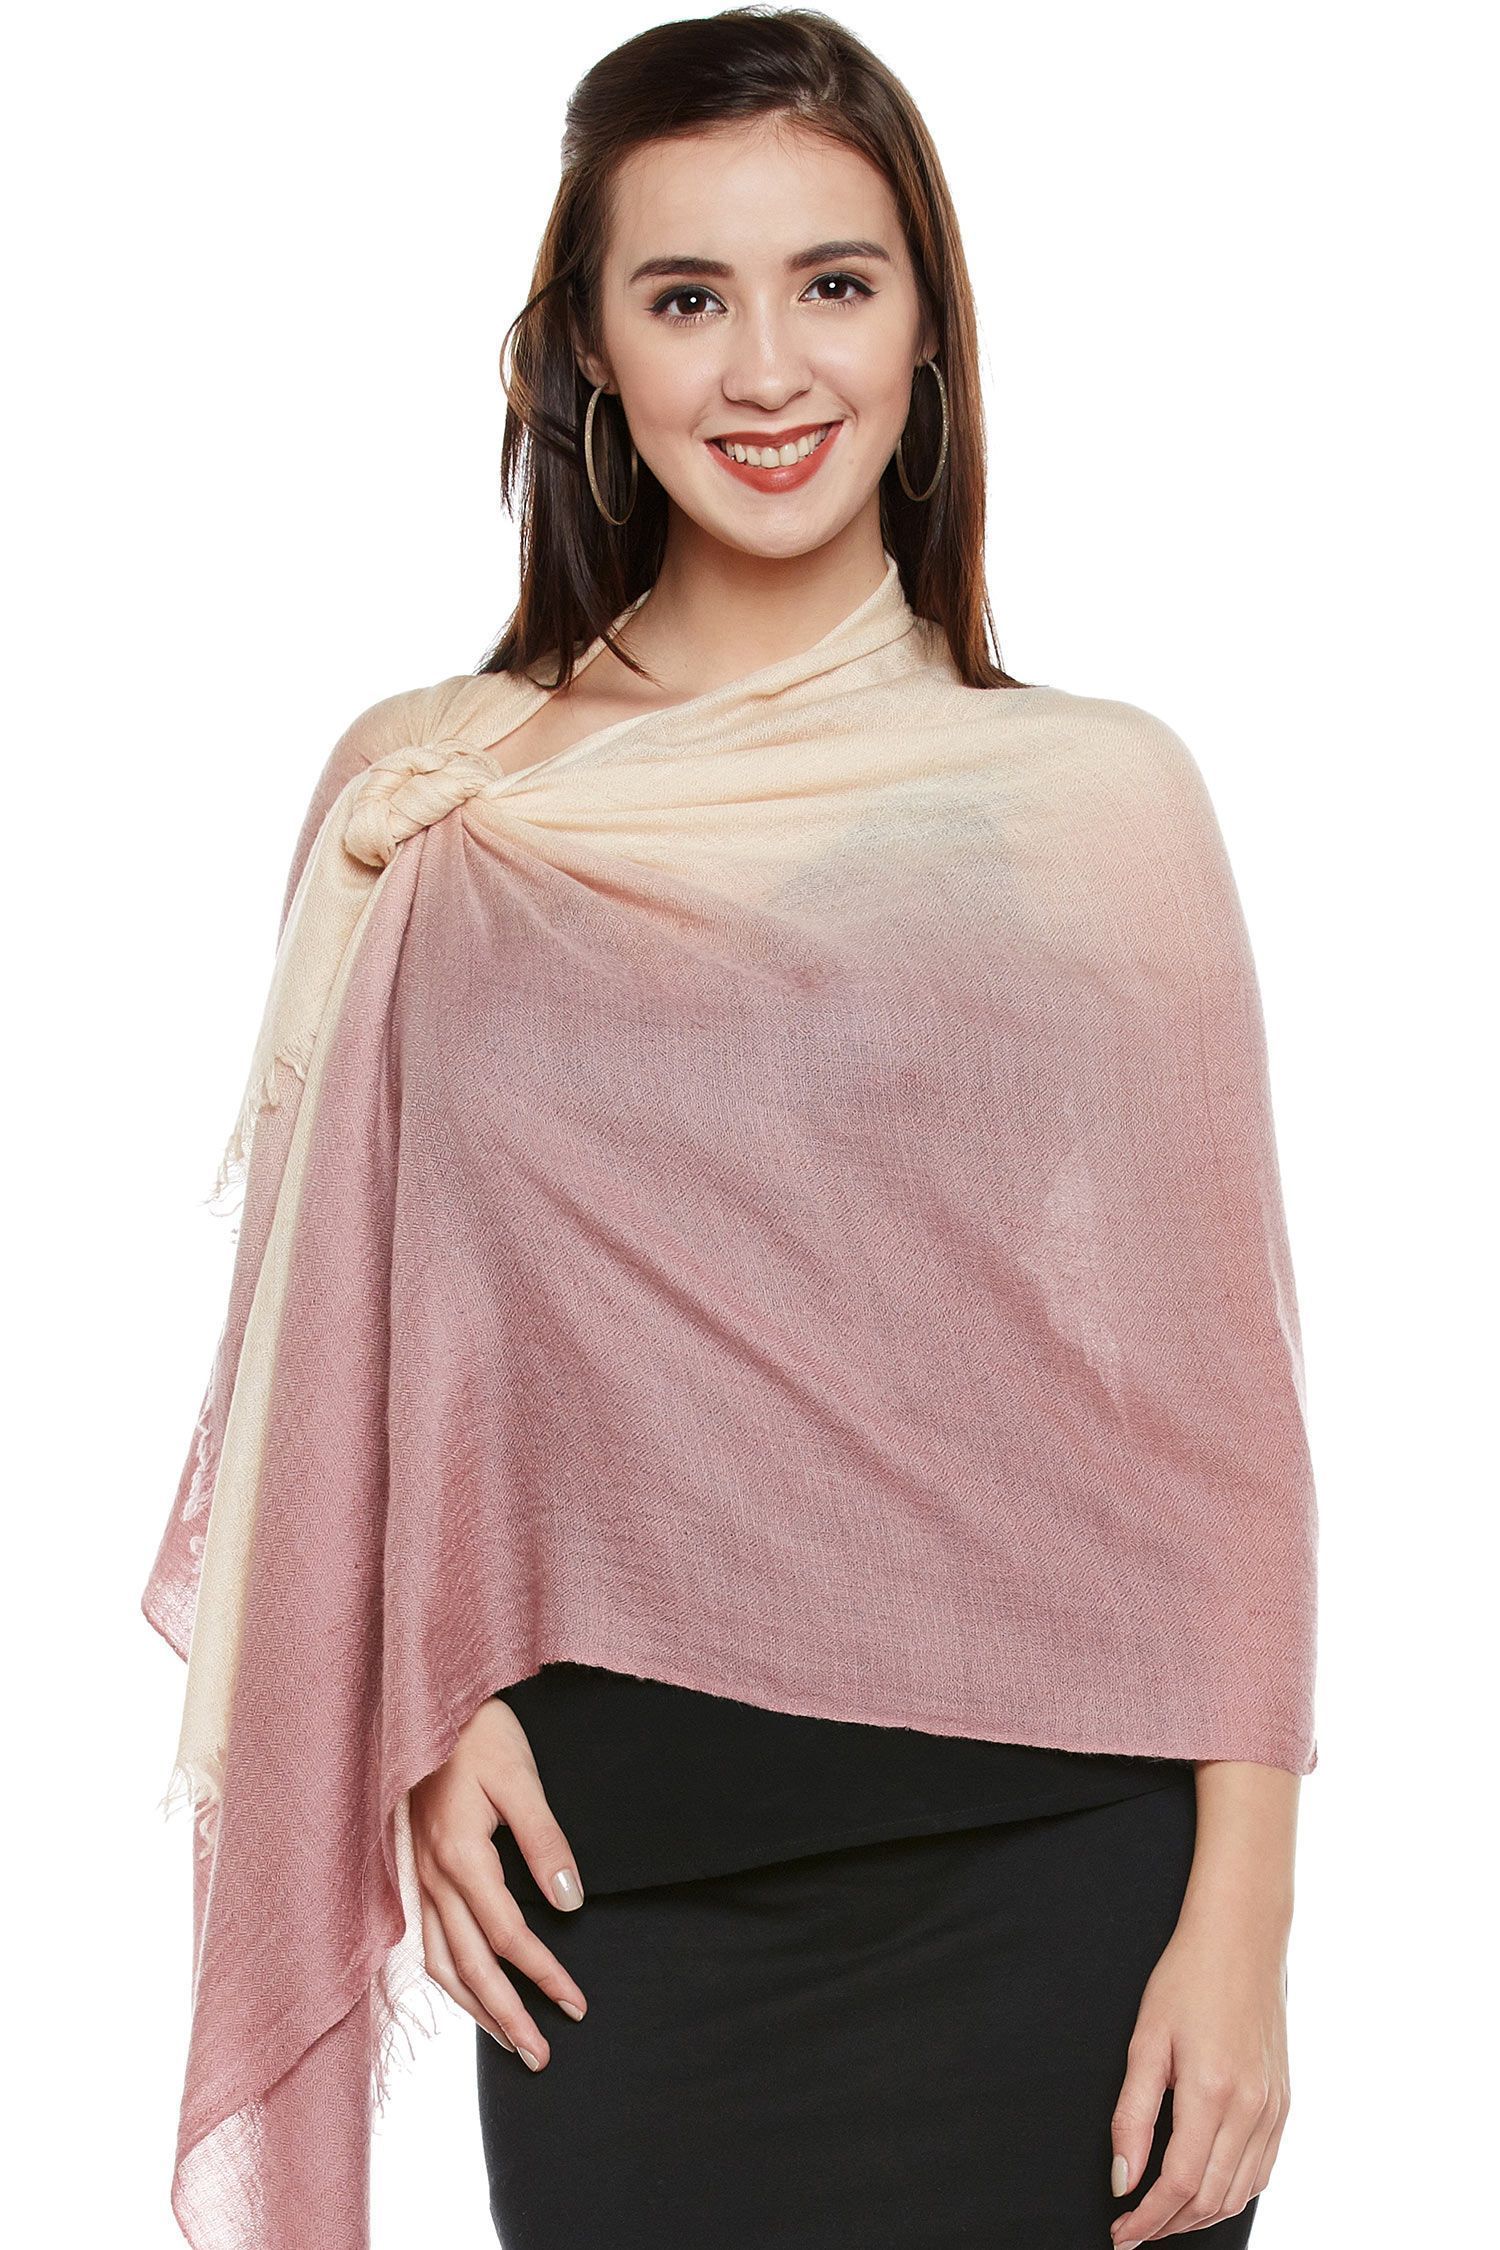 Cotton Candy Ombre Cashmere Wrap | Pure Pashmina